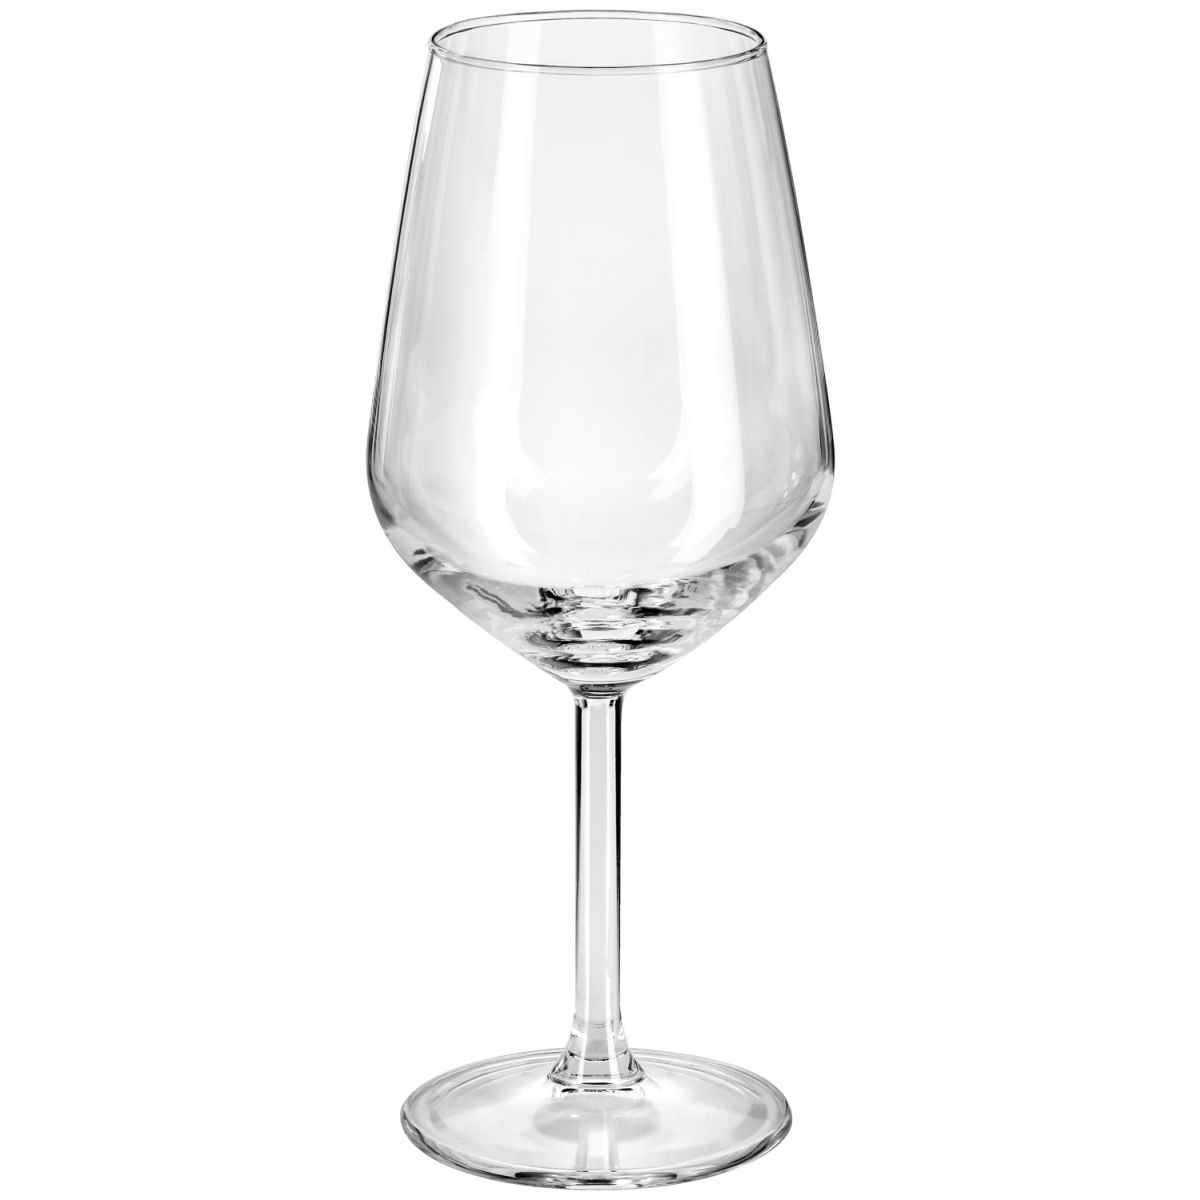 Pasabahçe Rode wijnglas Allegra; 490ml, 6.35x21.75 cm (ØxH); transparant; 6 stuk / verpakking